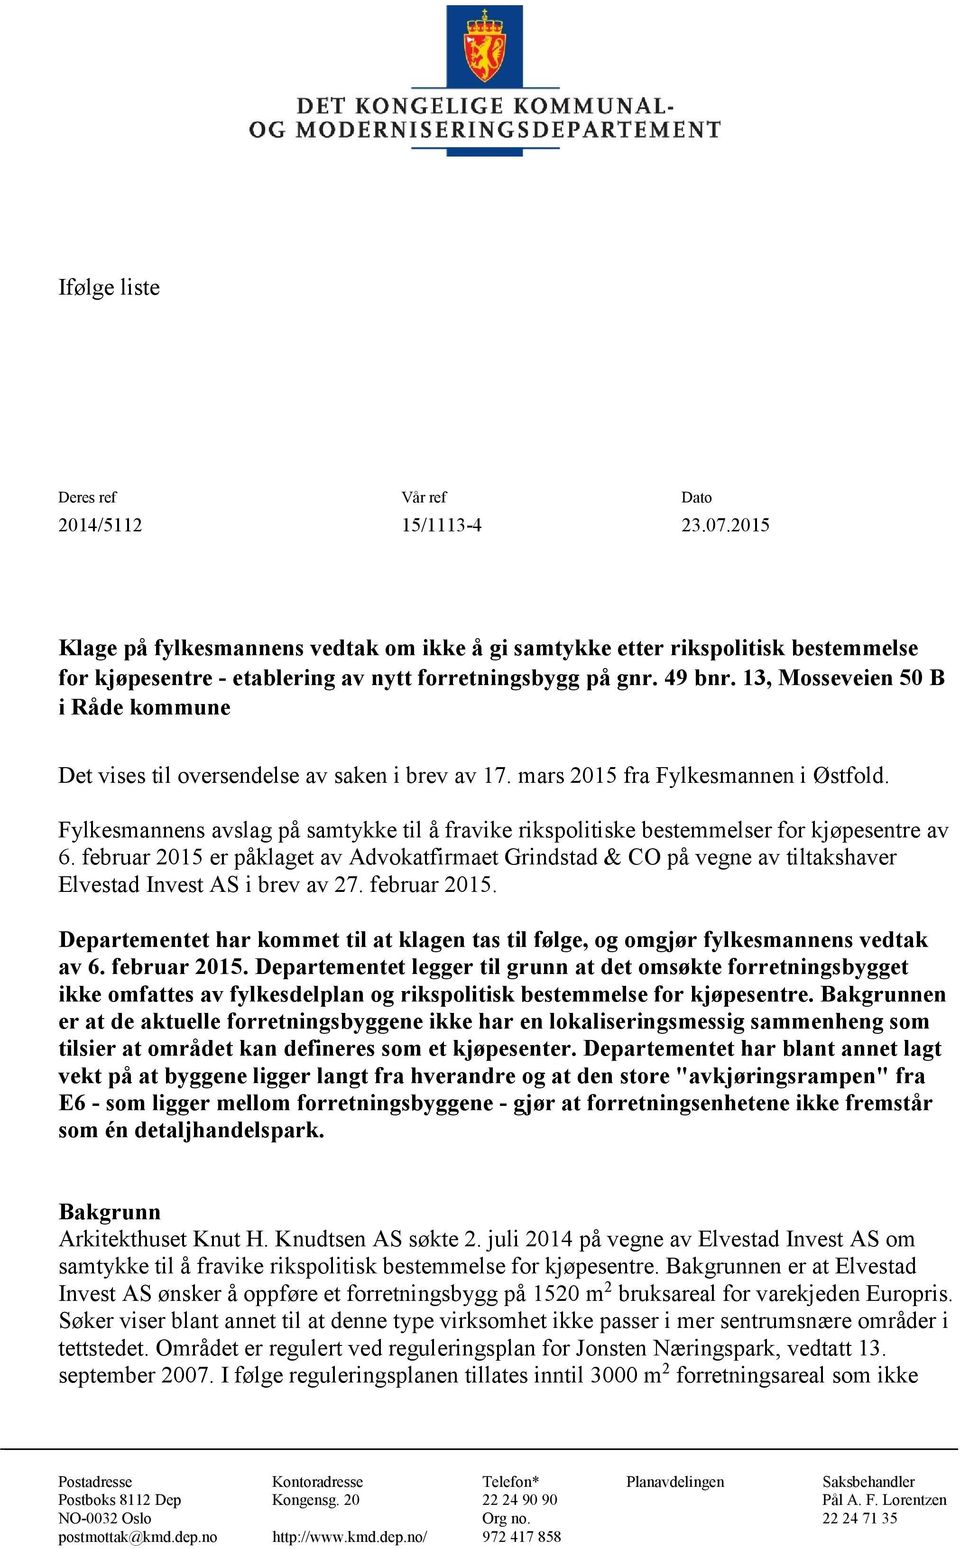 13, Mosseveien 50 B i Råde kommune Det vises til oversendelse av saken i brev av 17. mars 2015 fra Fylkesmannen i Østfold.